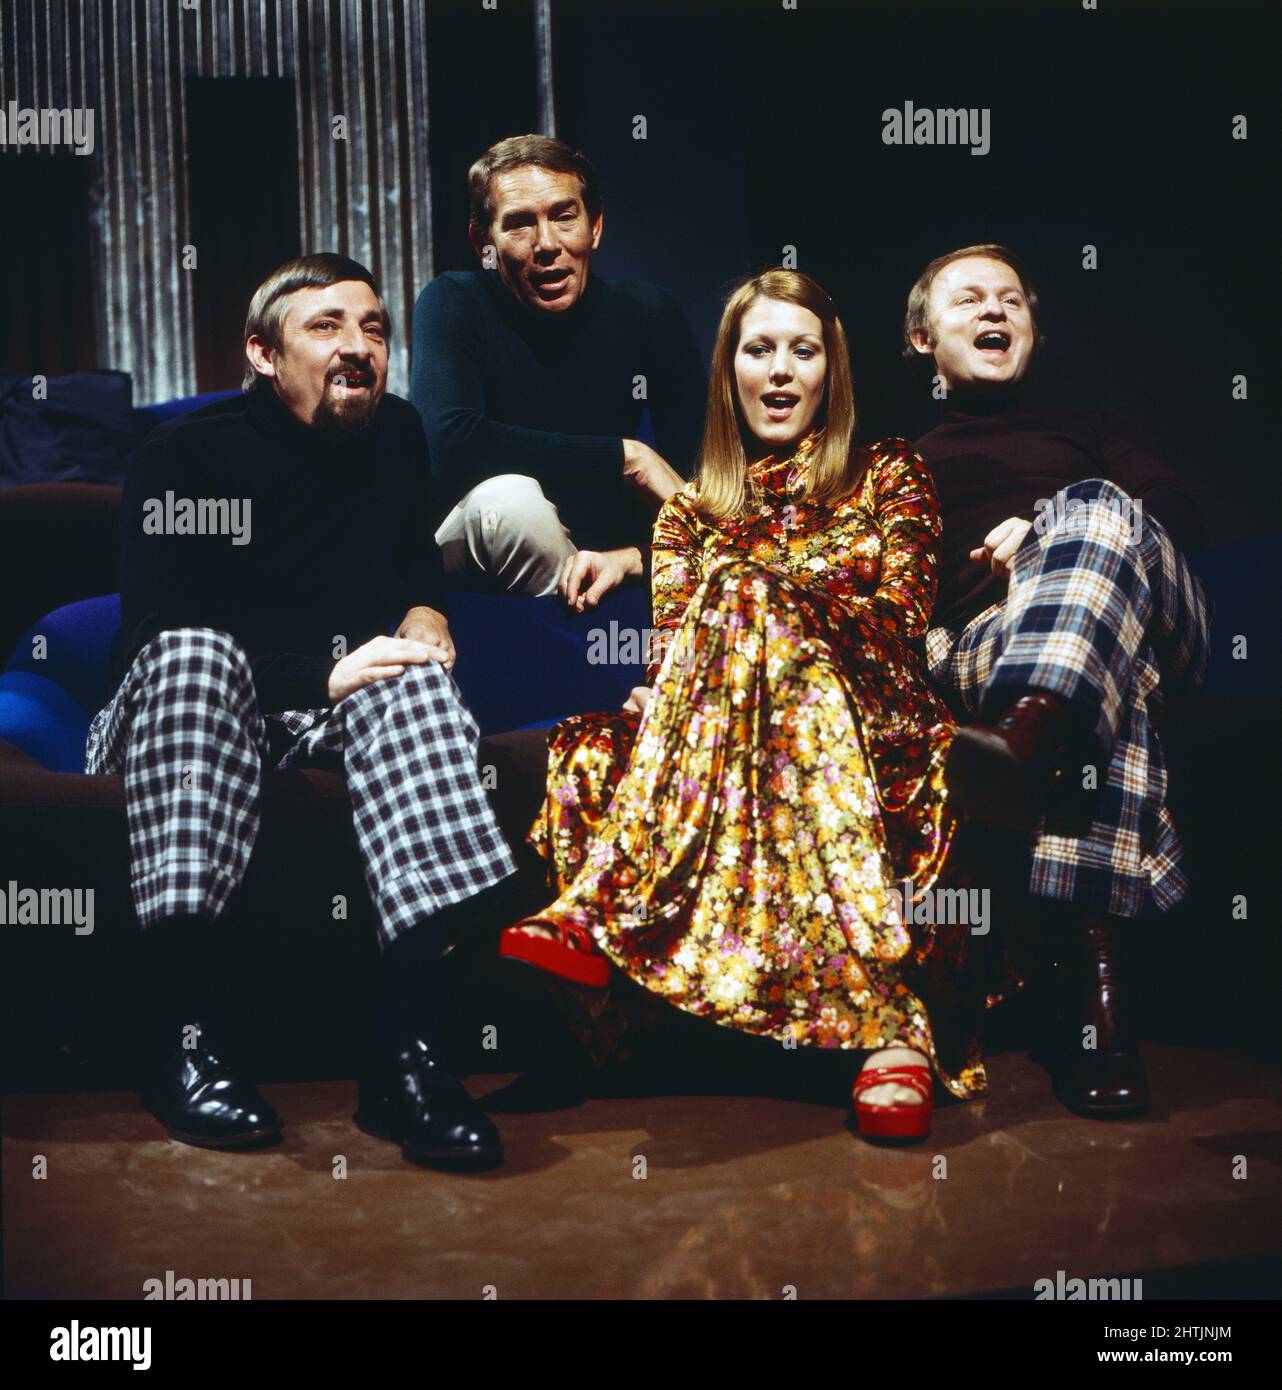 The Singers Unlimited, amerikanische Vokalgruppe bestehend aus Eugene Gene Puerling, Don Shelton, Len Dresslar und Bonnie Herman, Deutschland um 1974. Stock Photo